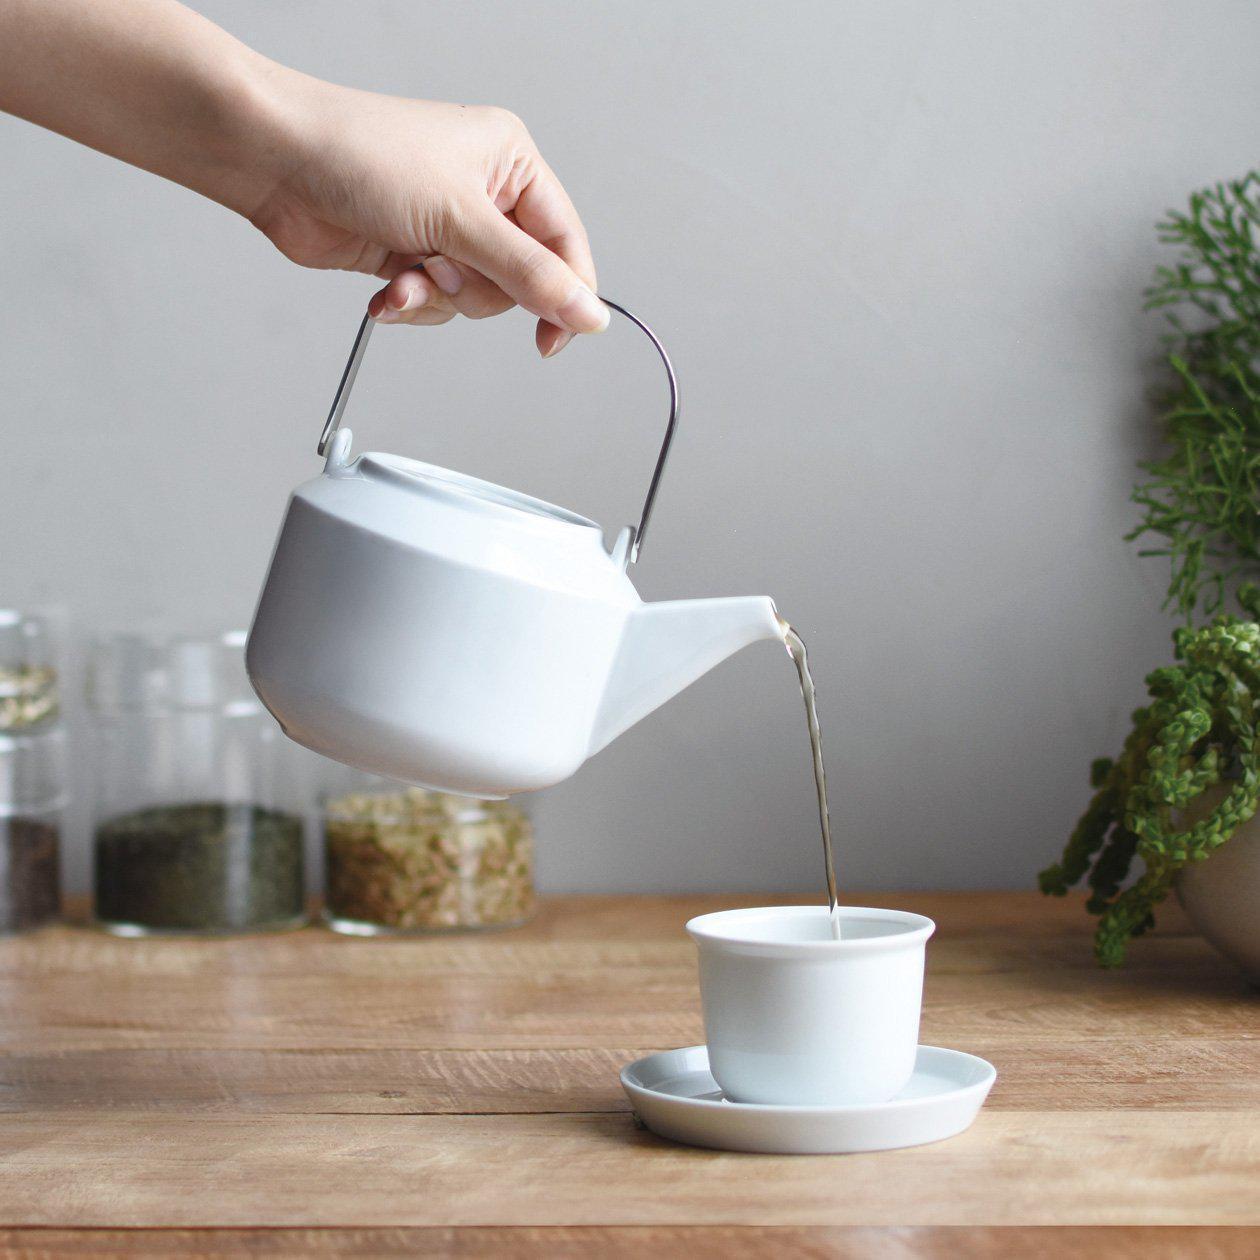 La tasse LEAVES TO TEA de KINTO : une expérience de thé unique. Porcelaine blanche de Hasami, design minimaliste et subtile touche de sophistication.